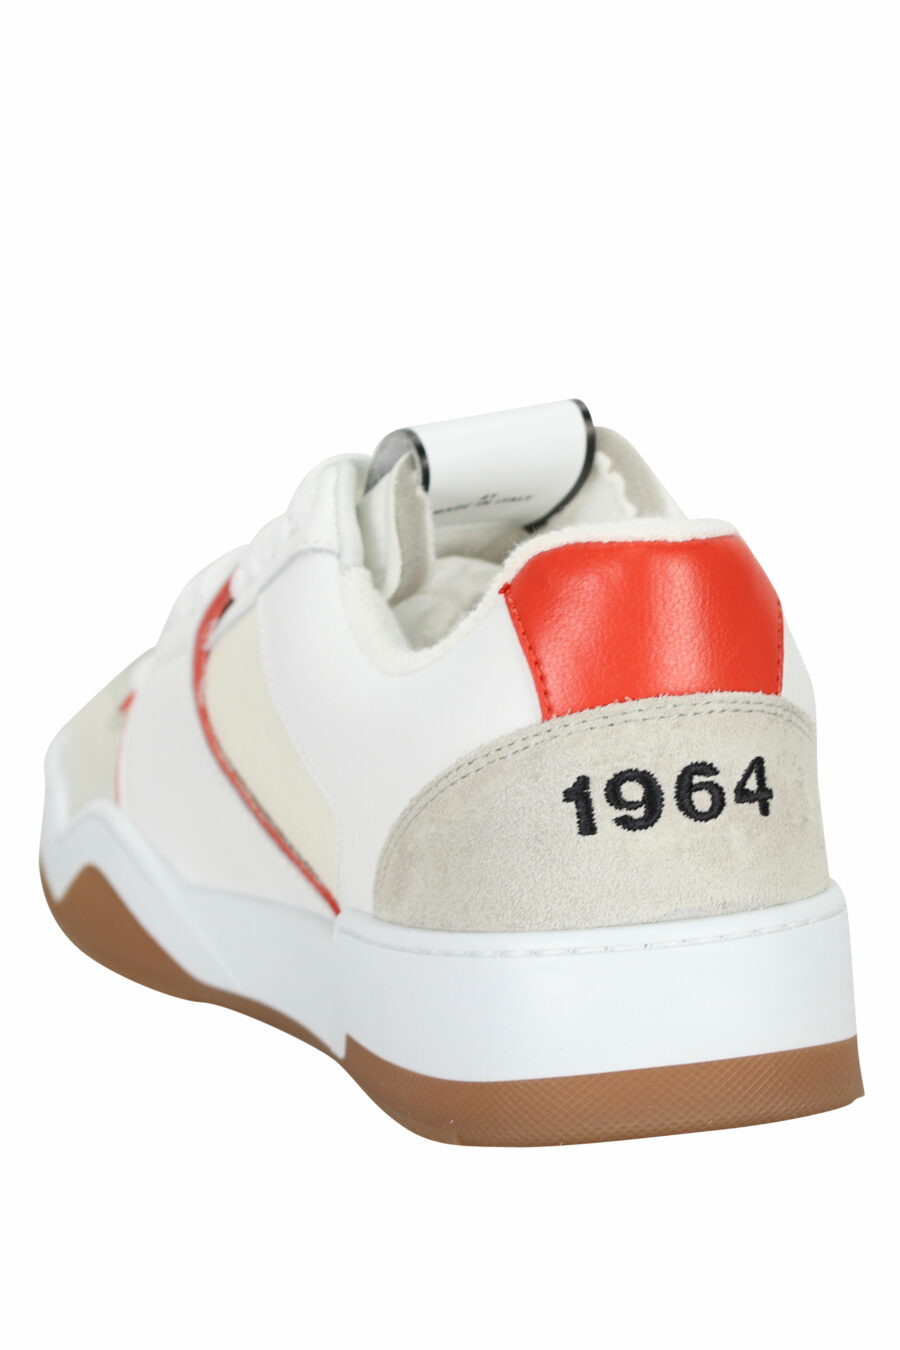 Zapatillas blancas "spyker" con rojo y gris - 8055777301814 3